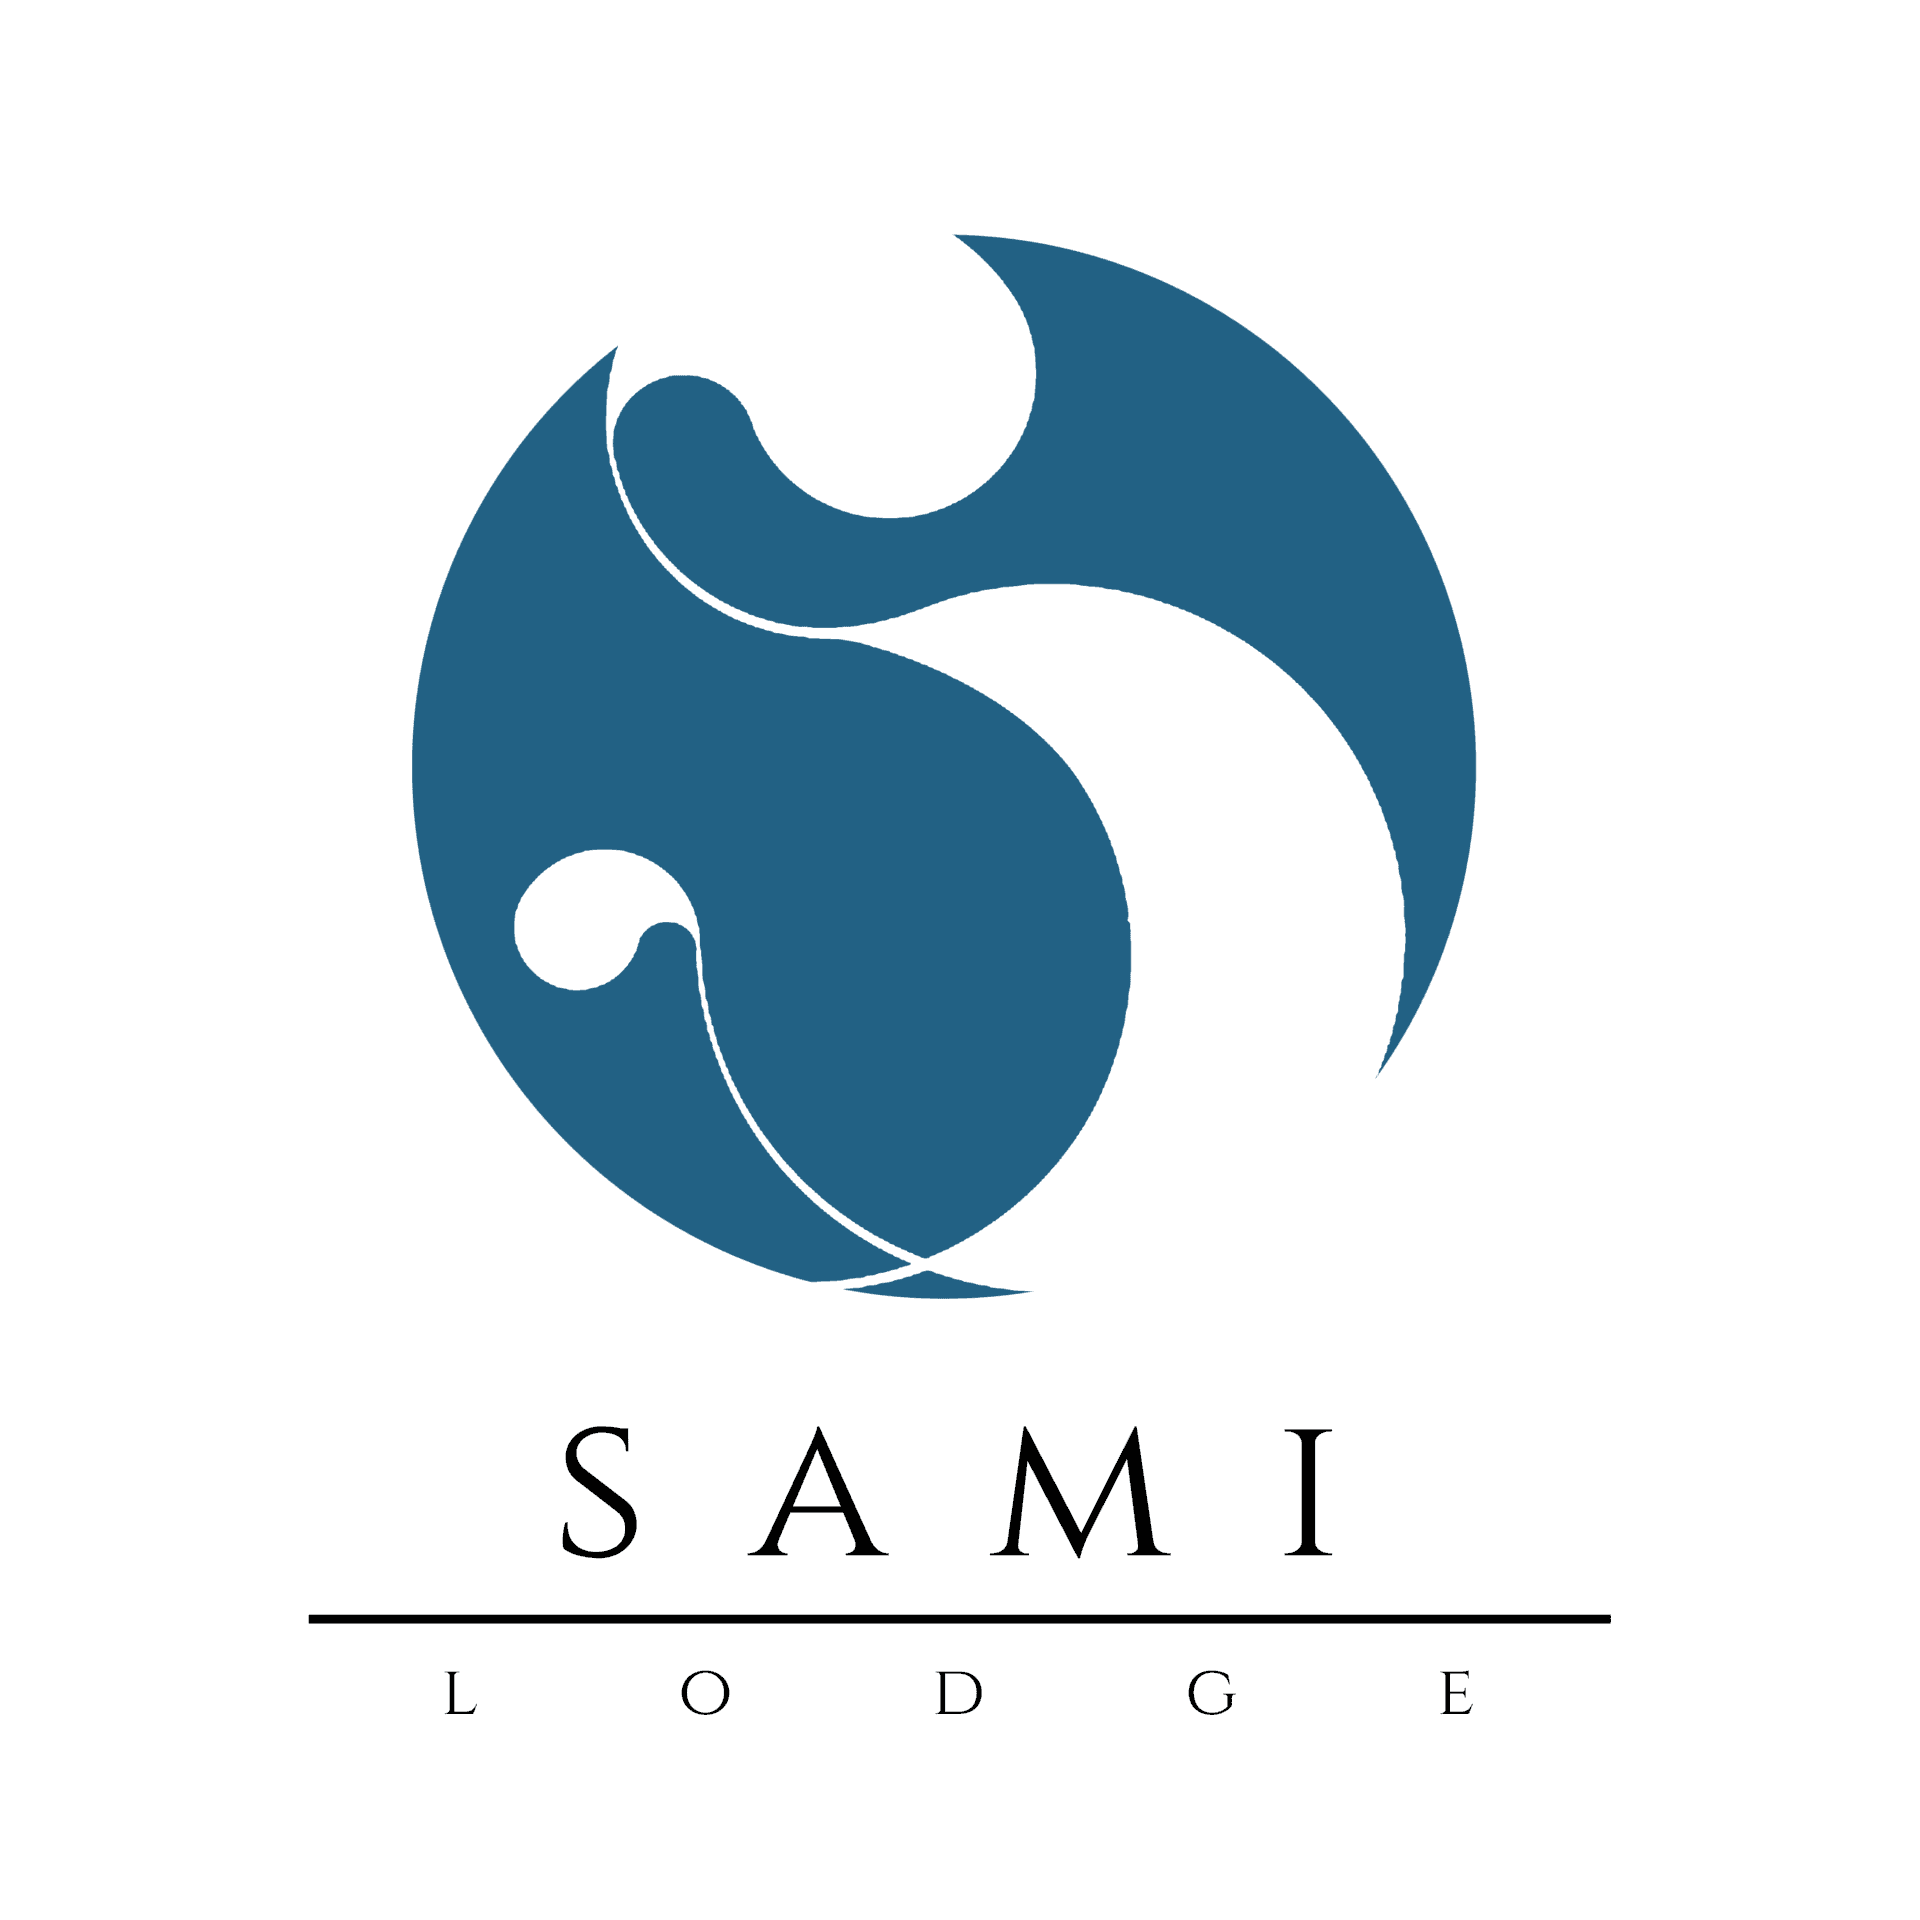 Sami Lodge vous propose ses locations saisonnieres